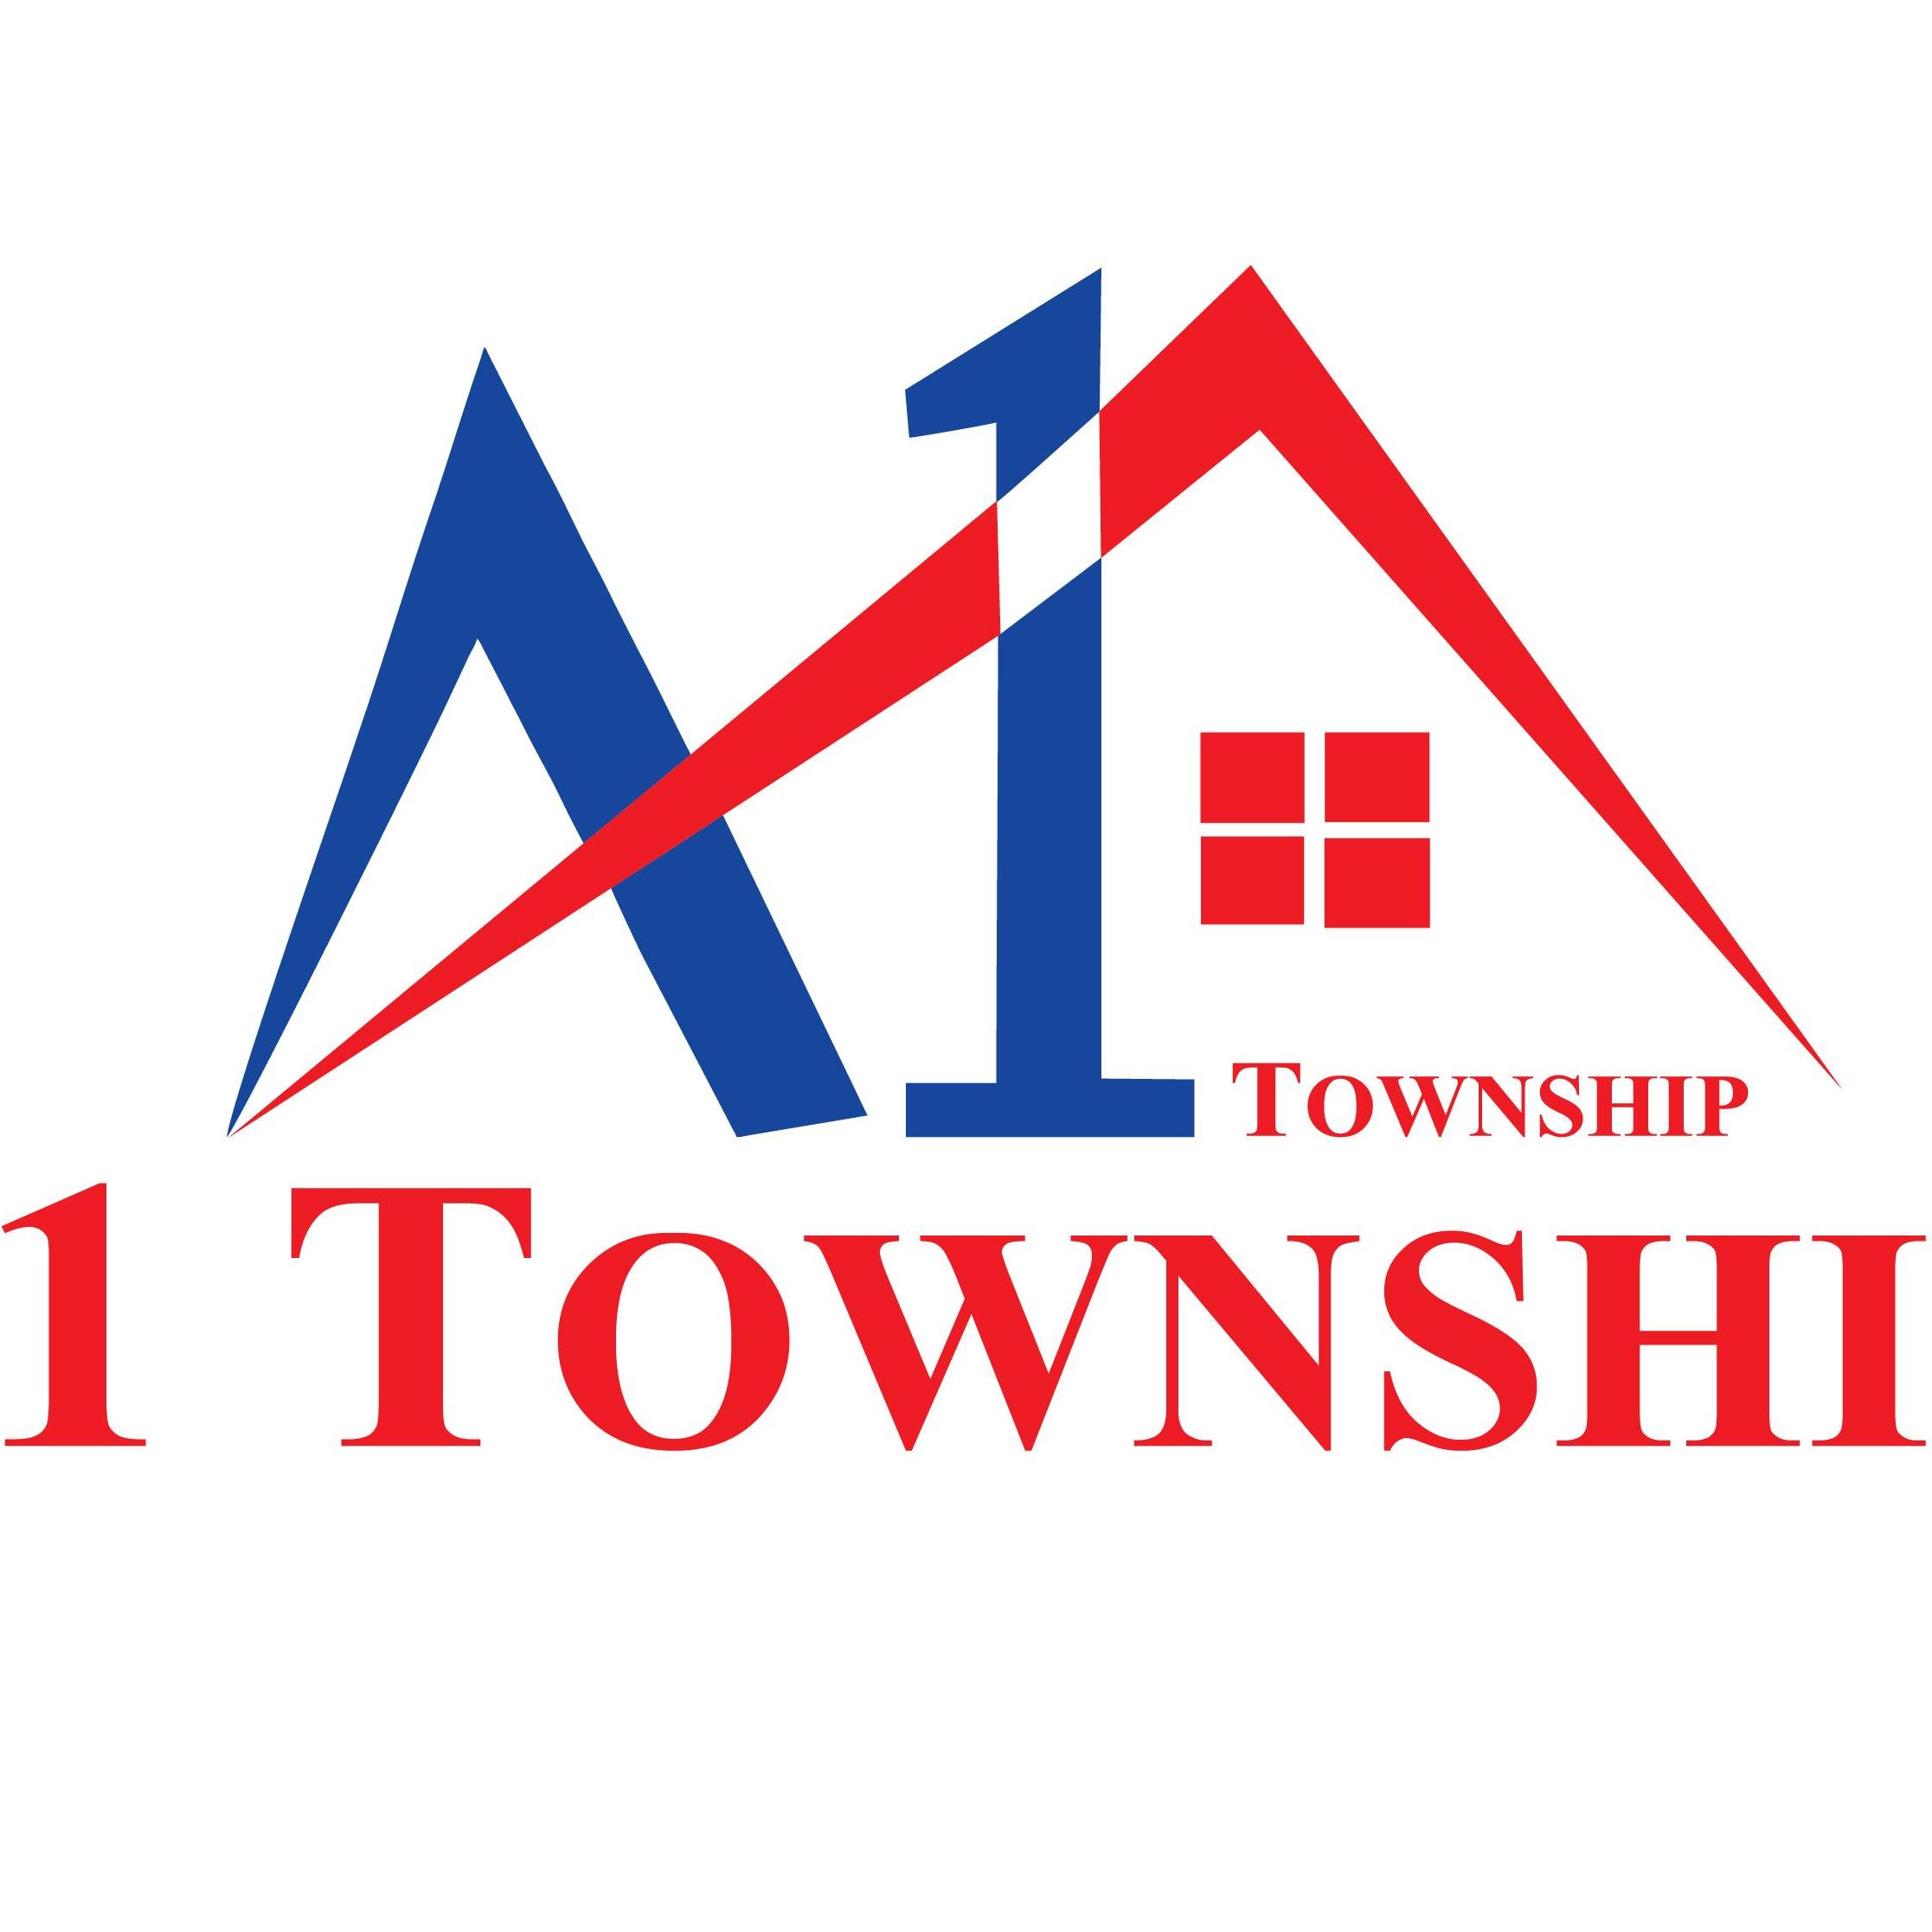 A1_Township